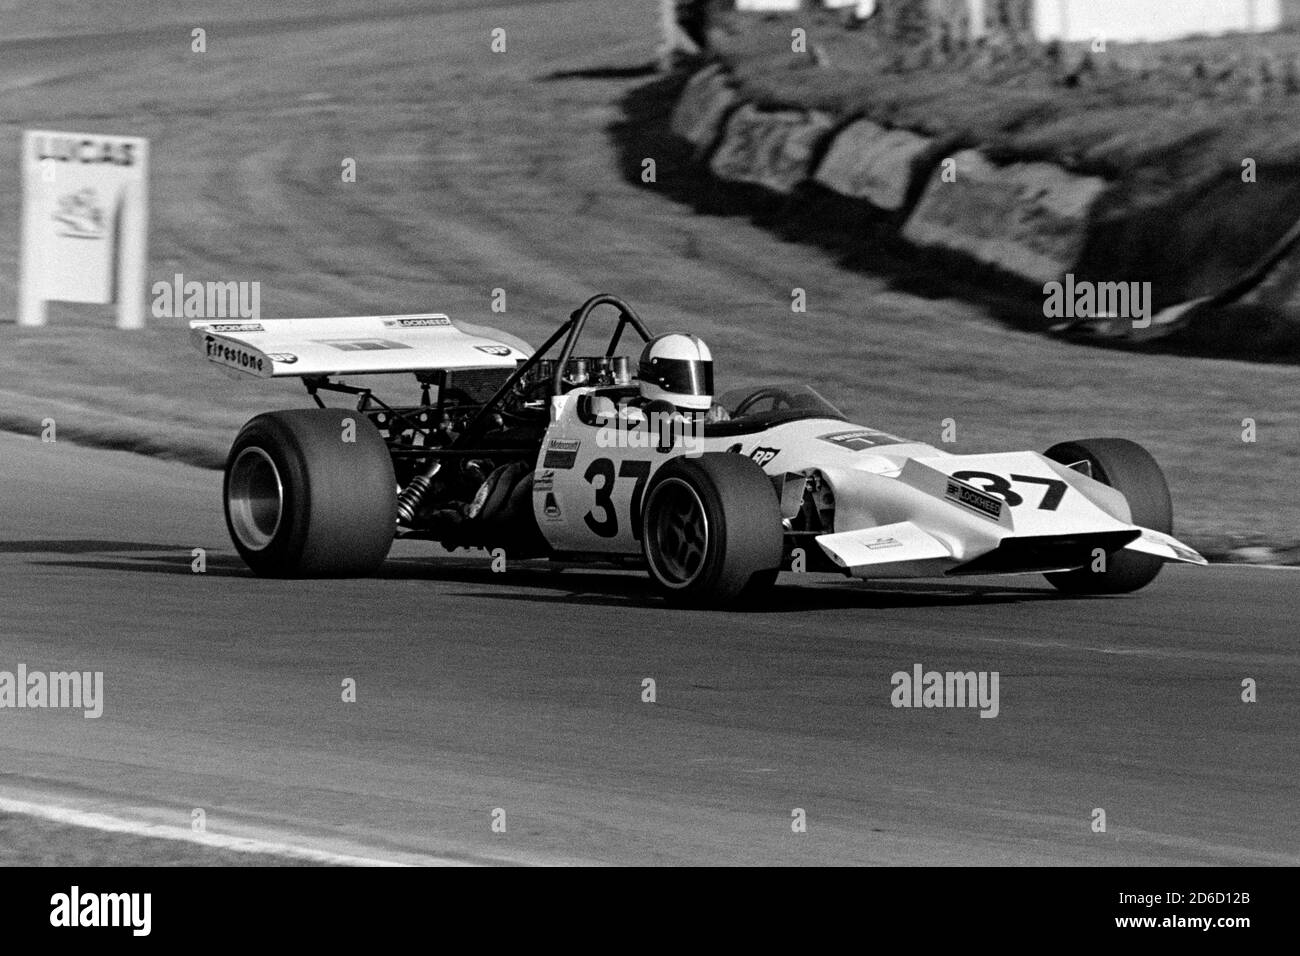 Roger Williamson am Steuer des Kitchmac - Chevrolet Kitchiner V8 FORMULA 5000 bei Brands Hatch im Jahr 1972. Rothmans F5000 Championship Runde Stockfoto